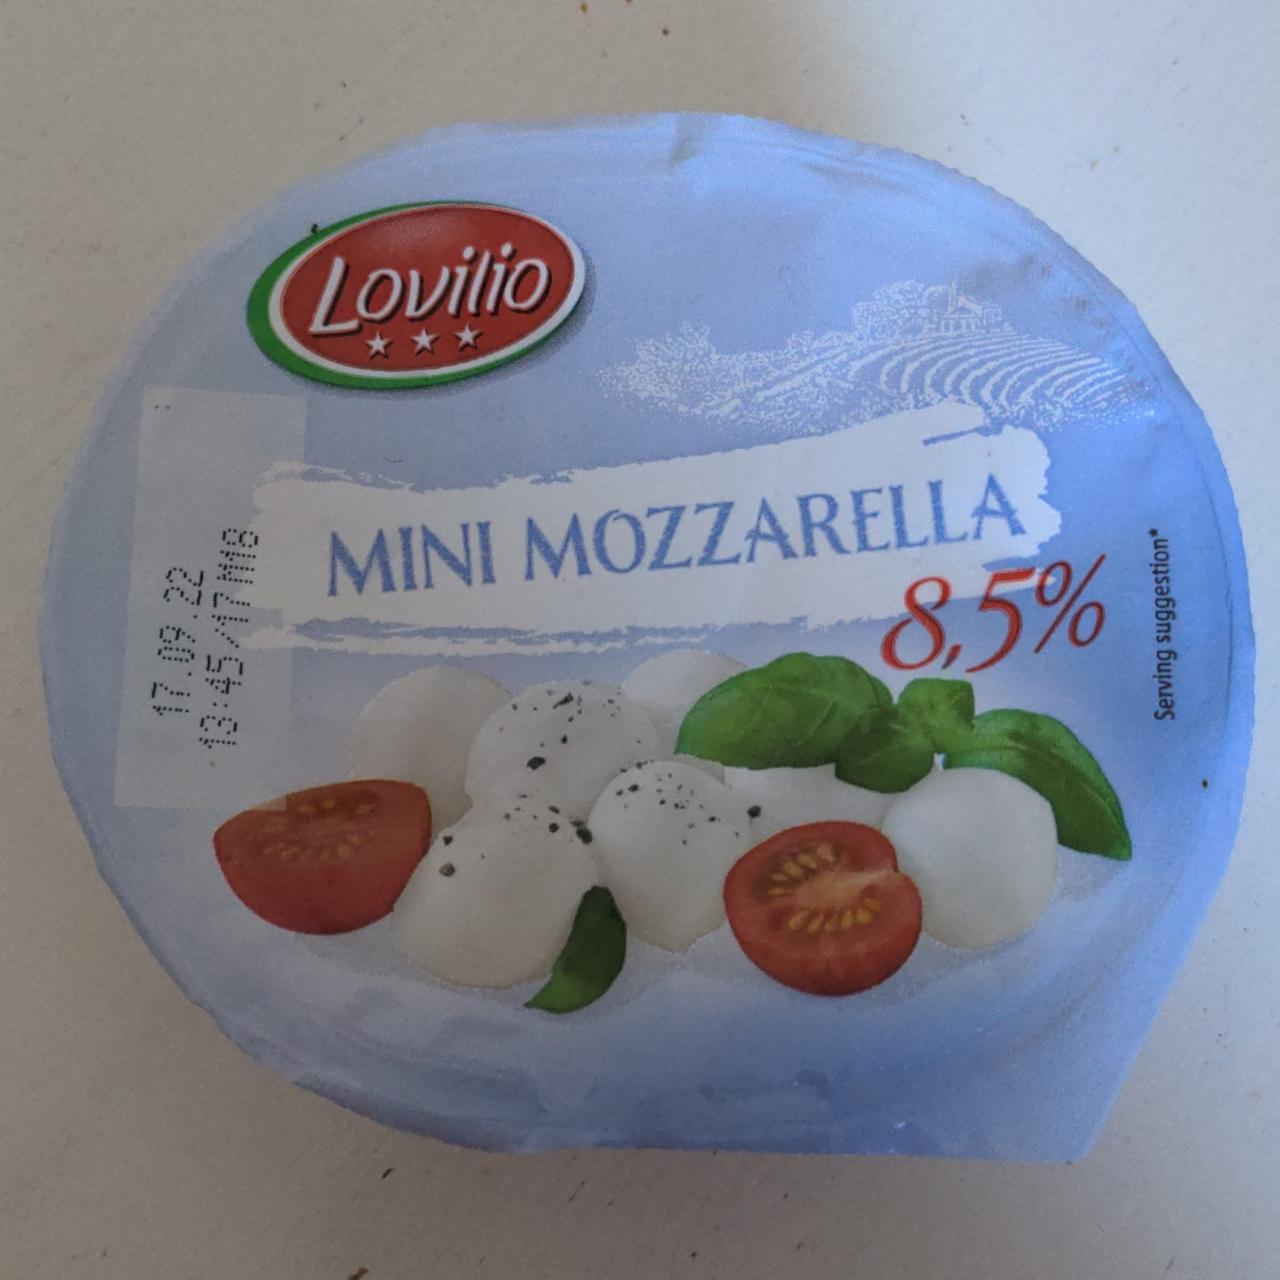 Фото - Сыр 8.5% Mini Mozzarella Light Lovilio